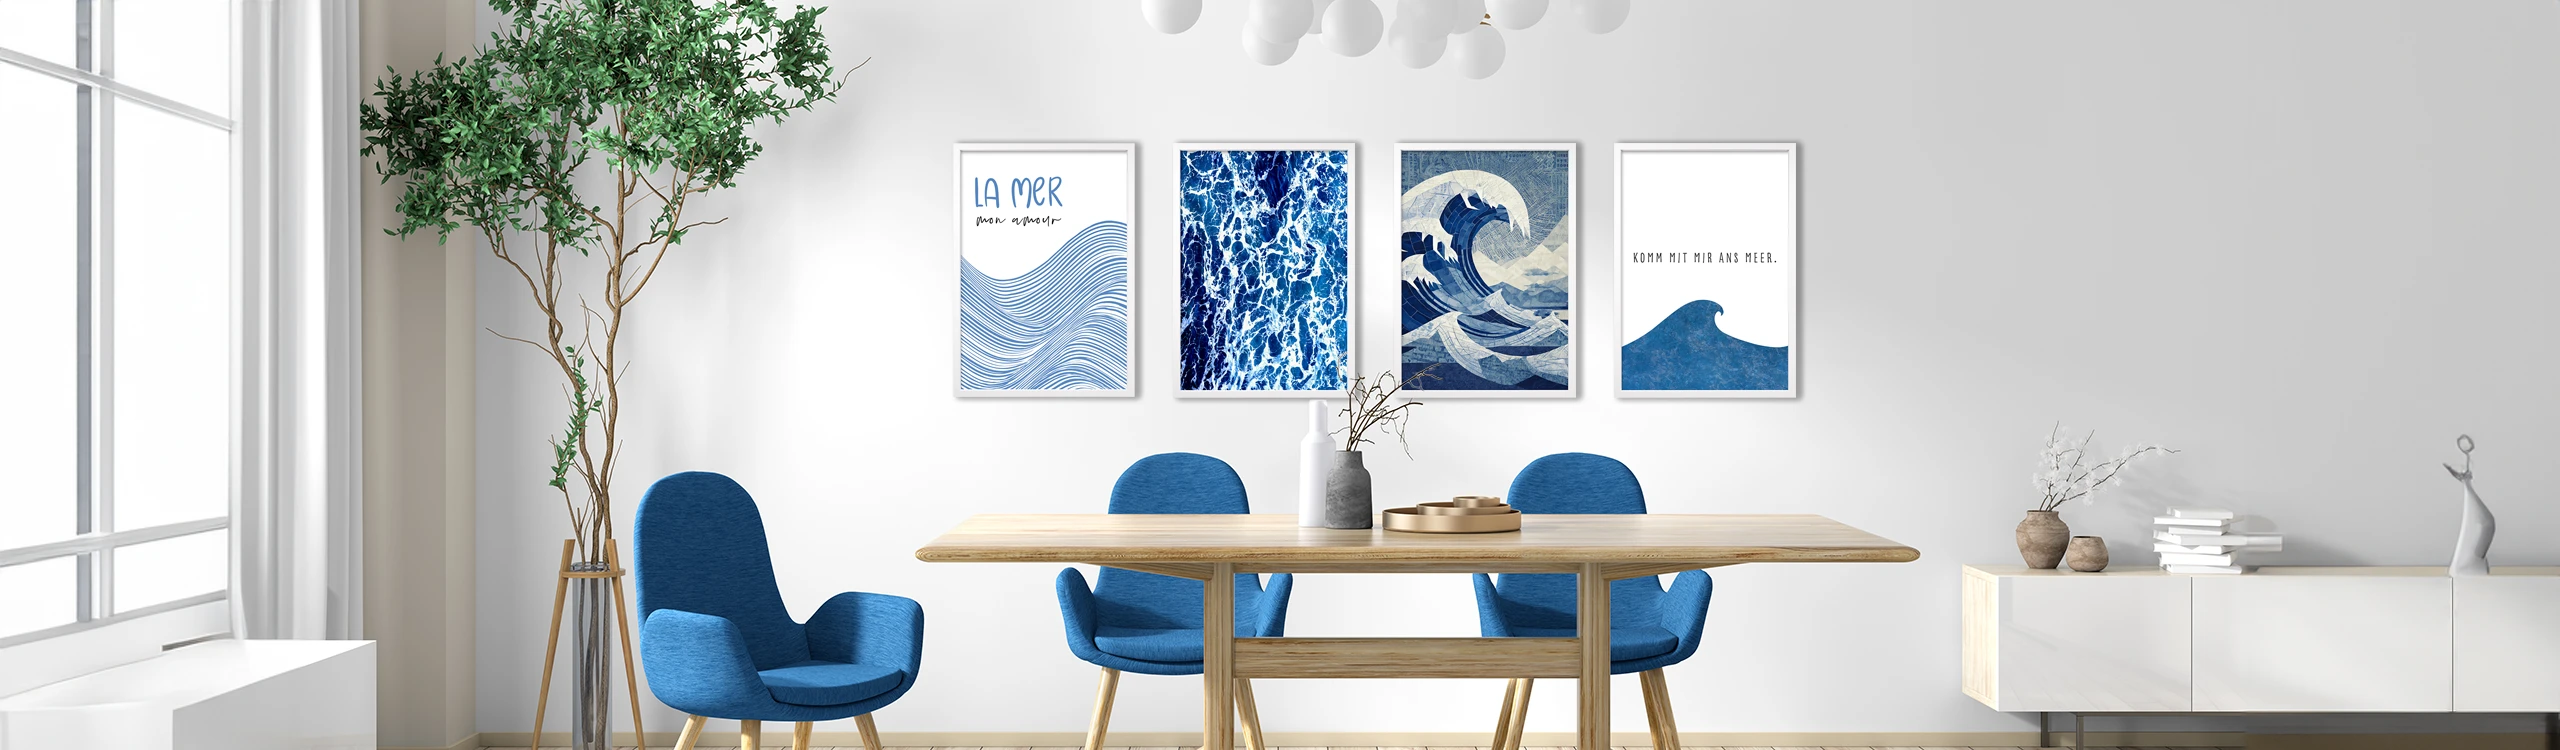 Wellen und Meer – grafische, maritime Poster von der Posterschmiede.